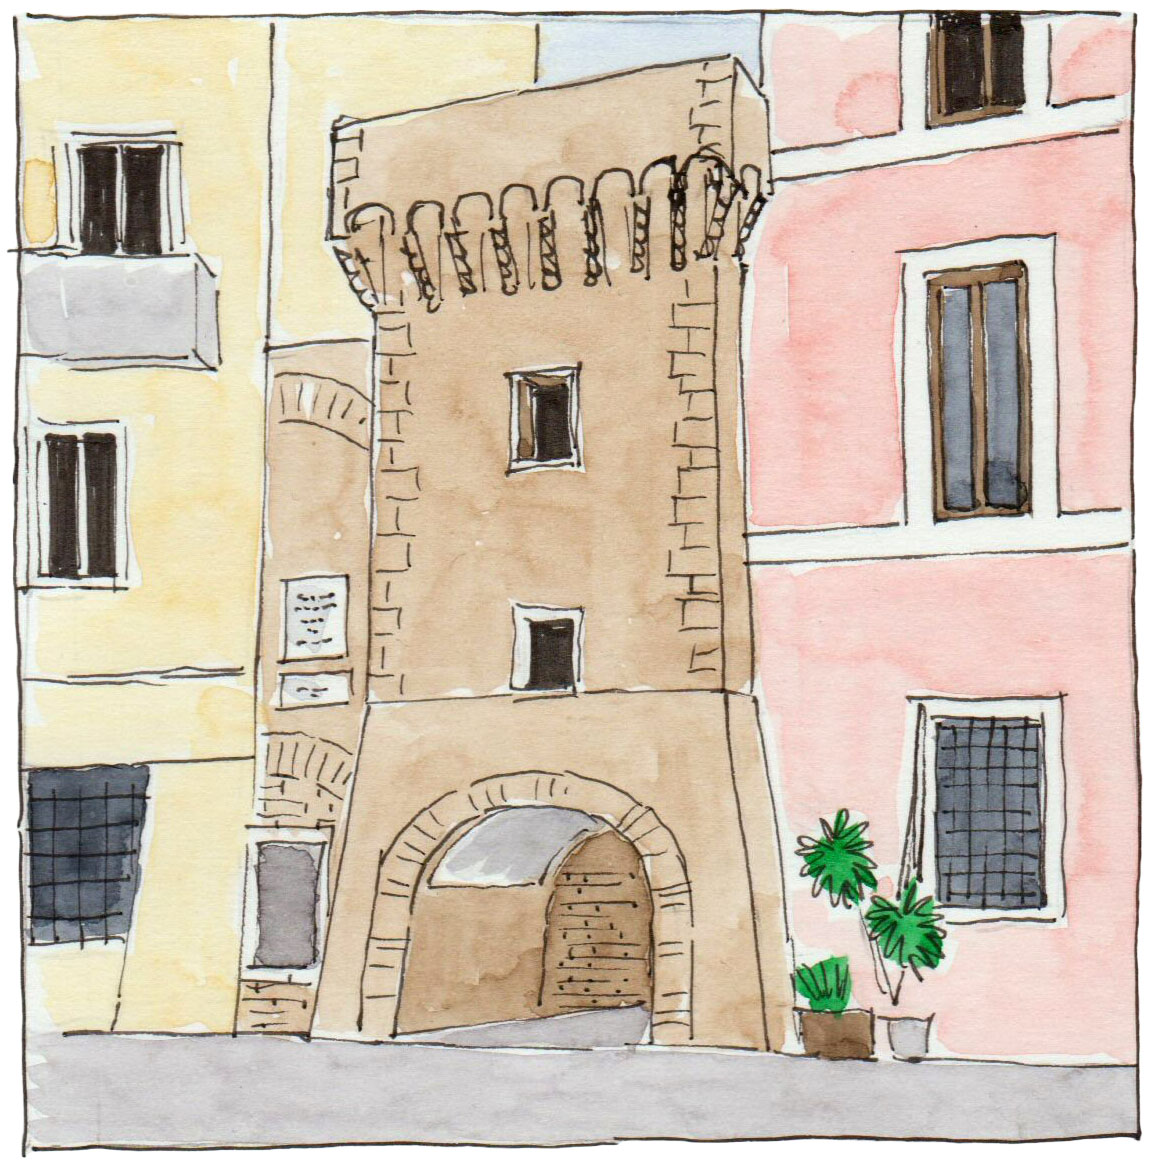 Porta dell'Archetto - Illustration by Mario Camerini